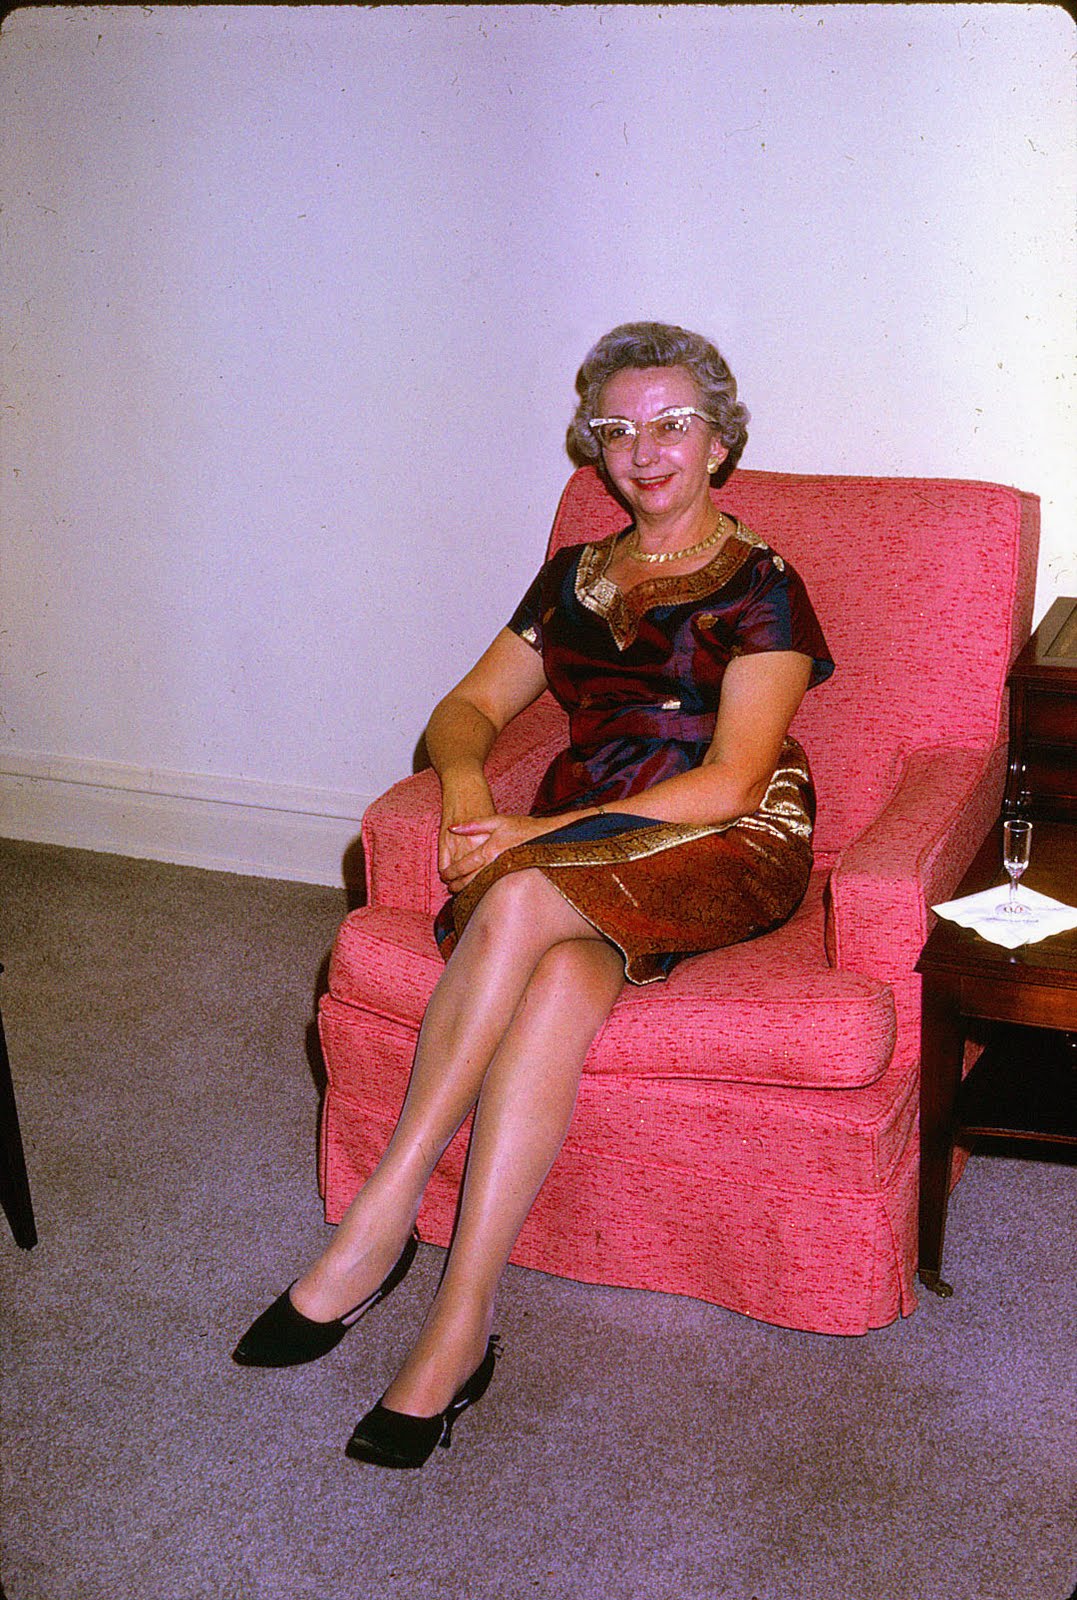 Mature Women Aged Home Photos – Telegraph